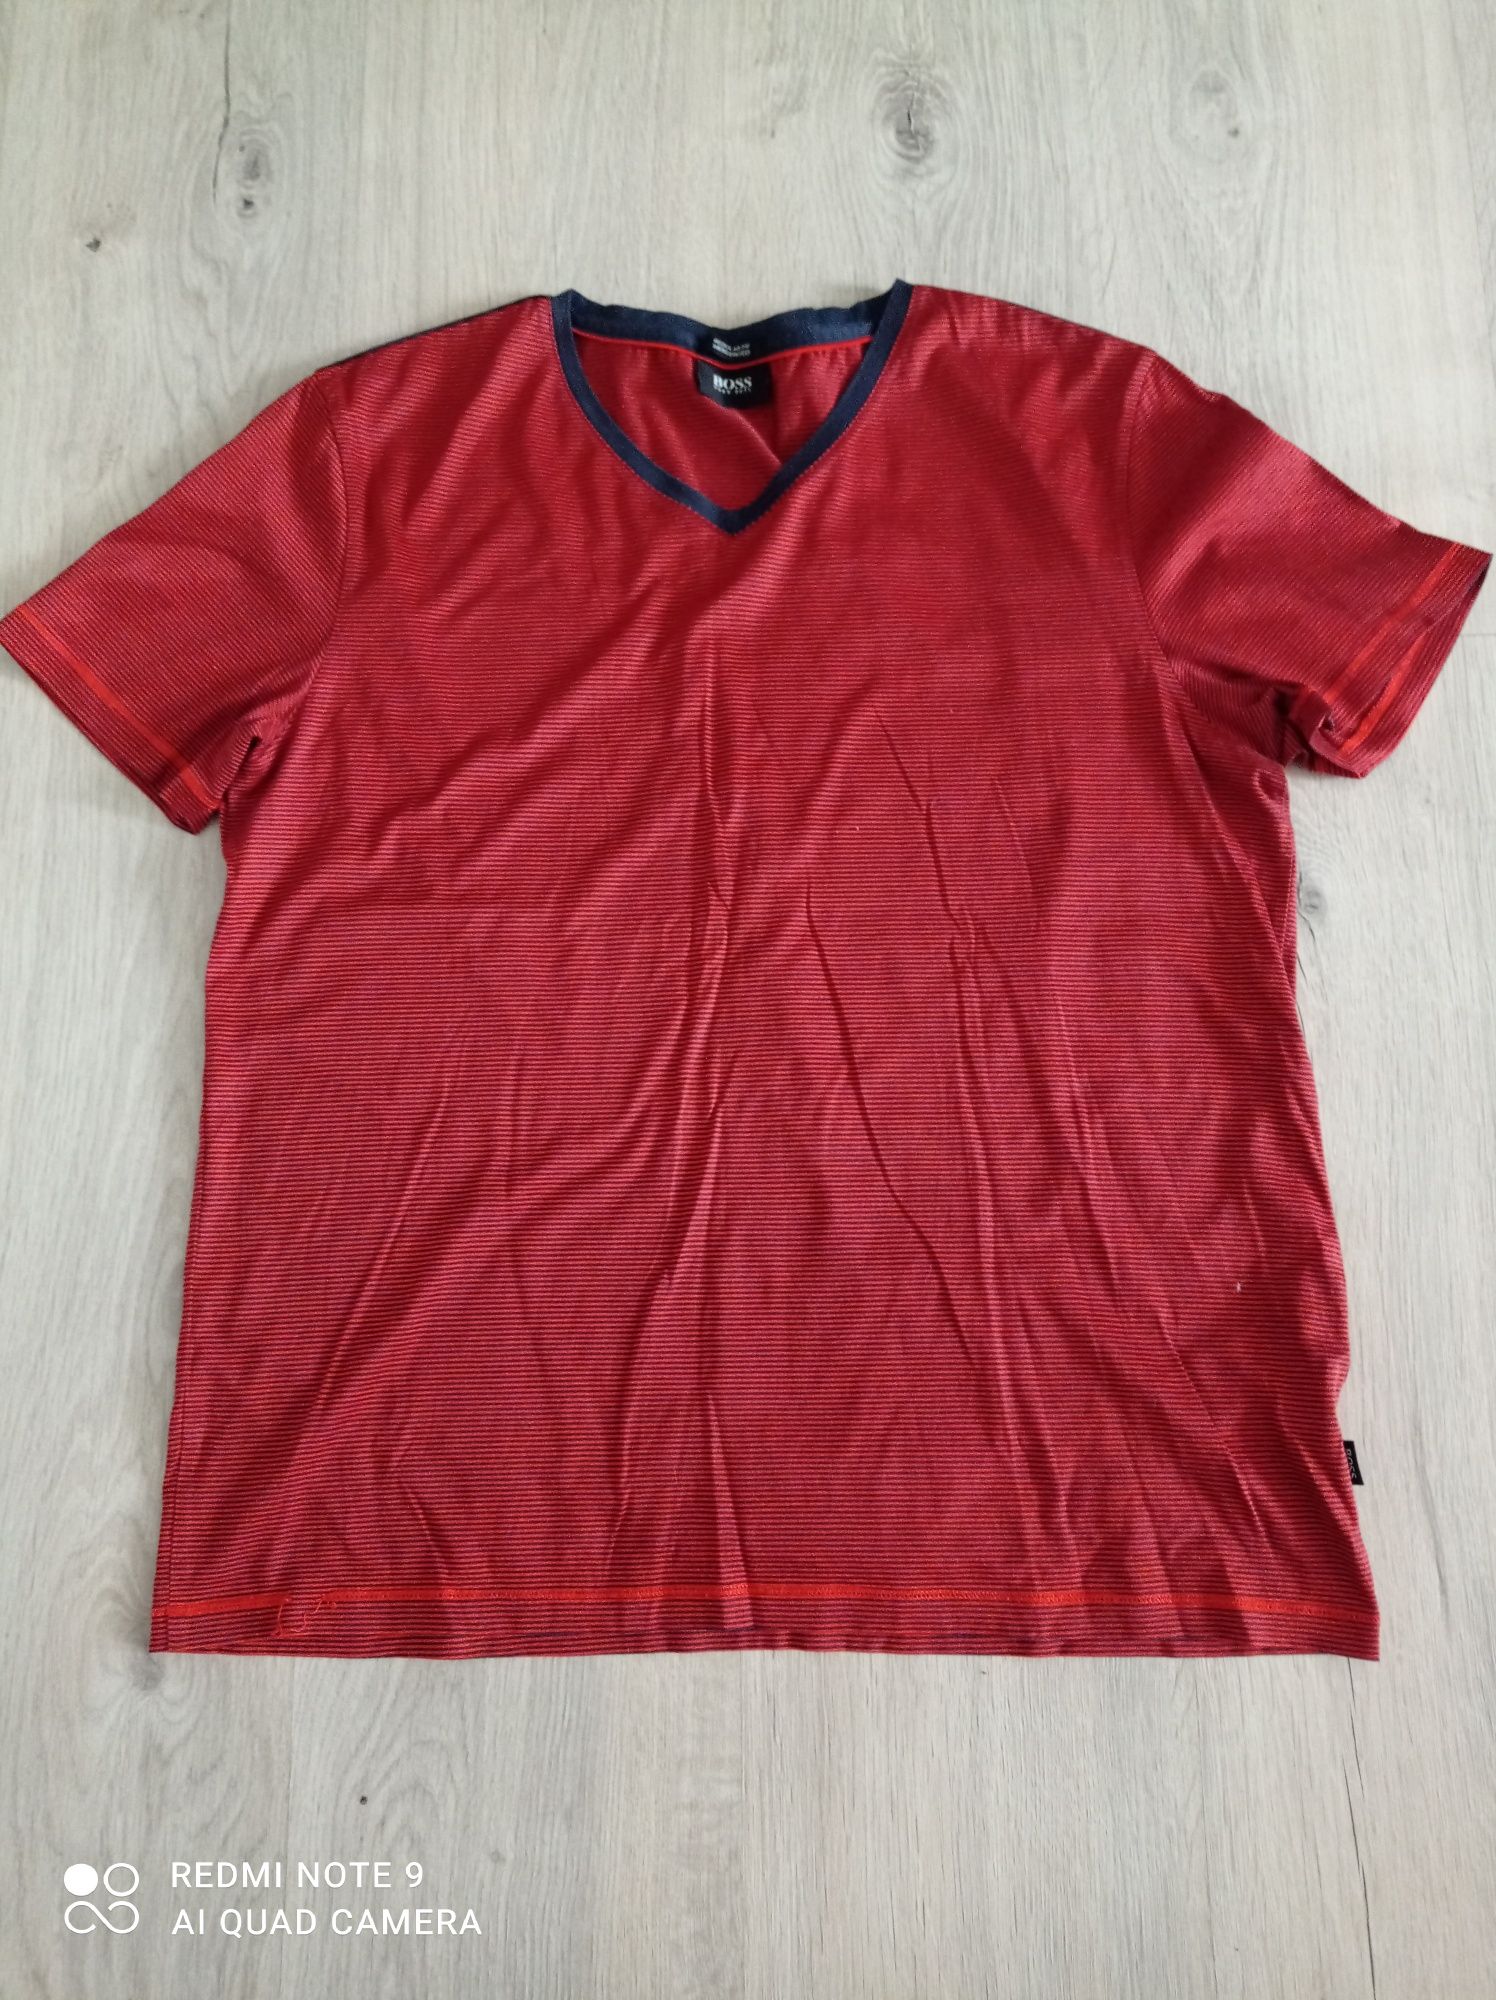 Koszulka t-shirt damska Hugo Boss 42-44 L